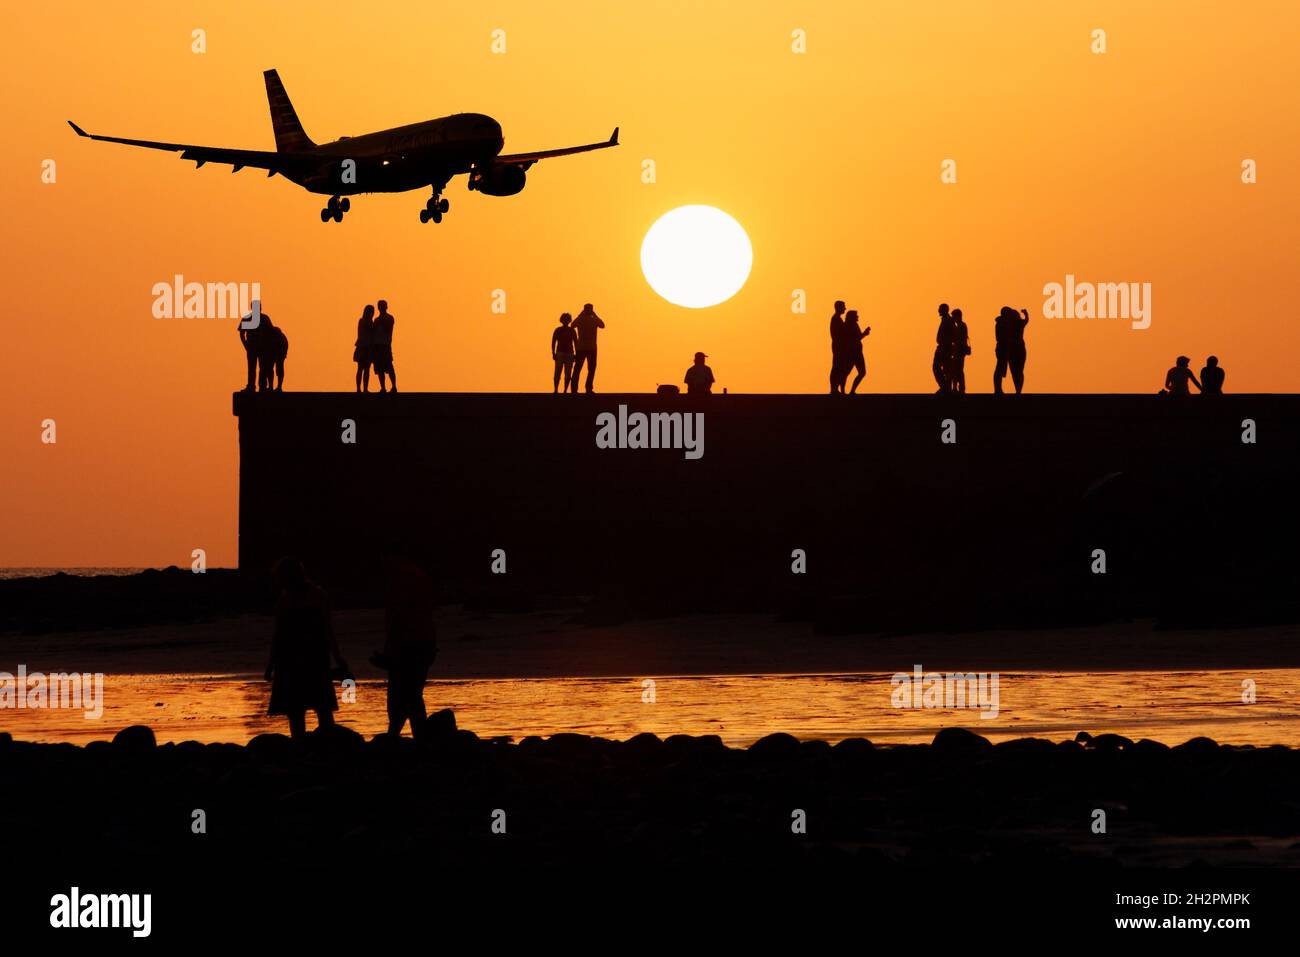 Turistas viendo puesta de sol con avión, aviones volando bajo. Turismo, industria de la aviación, contaminación del aire, calentamiento global, cambio climático... concepto Foto de stock